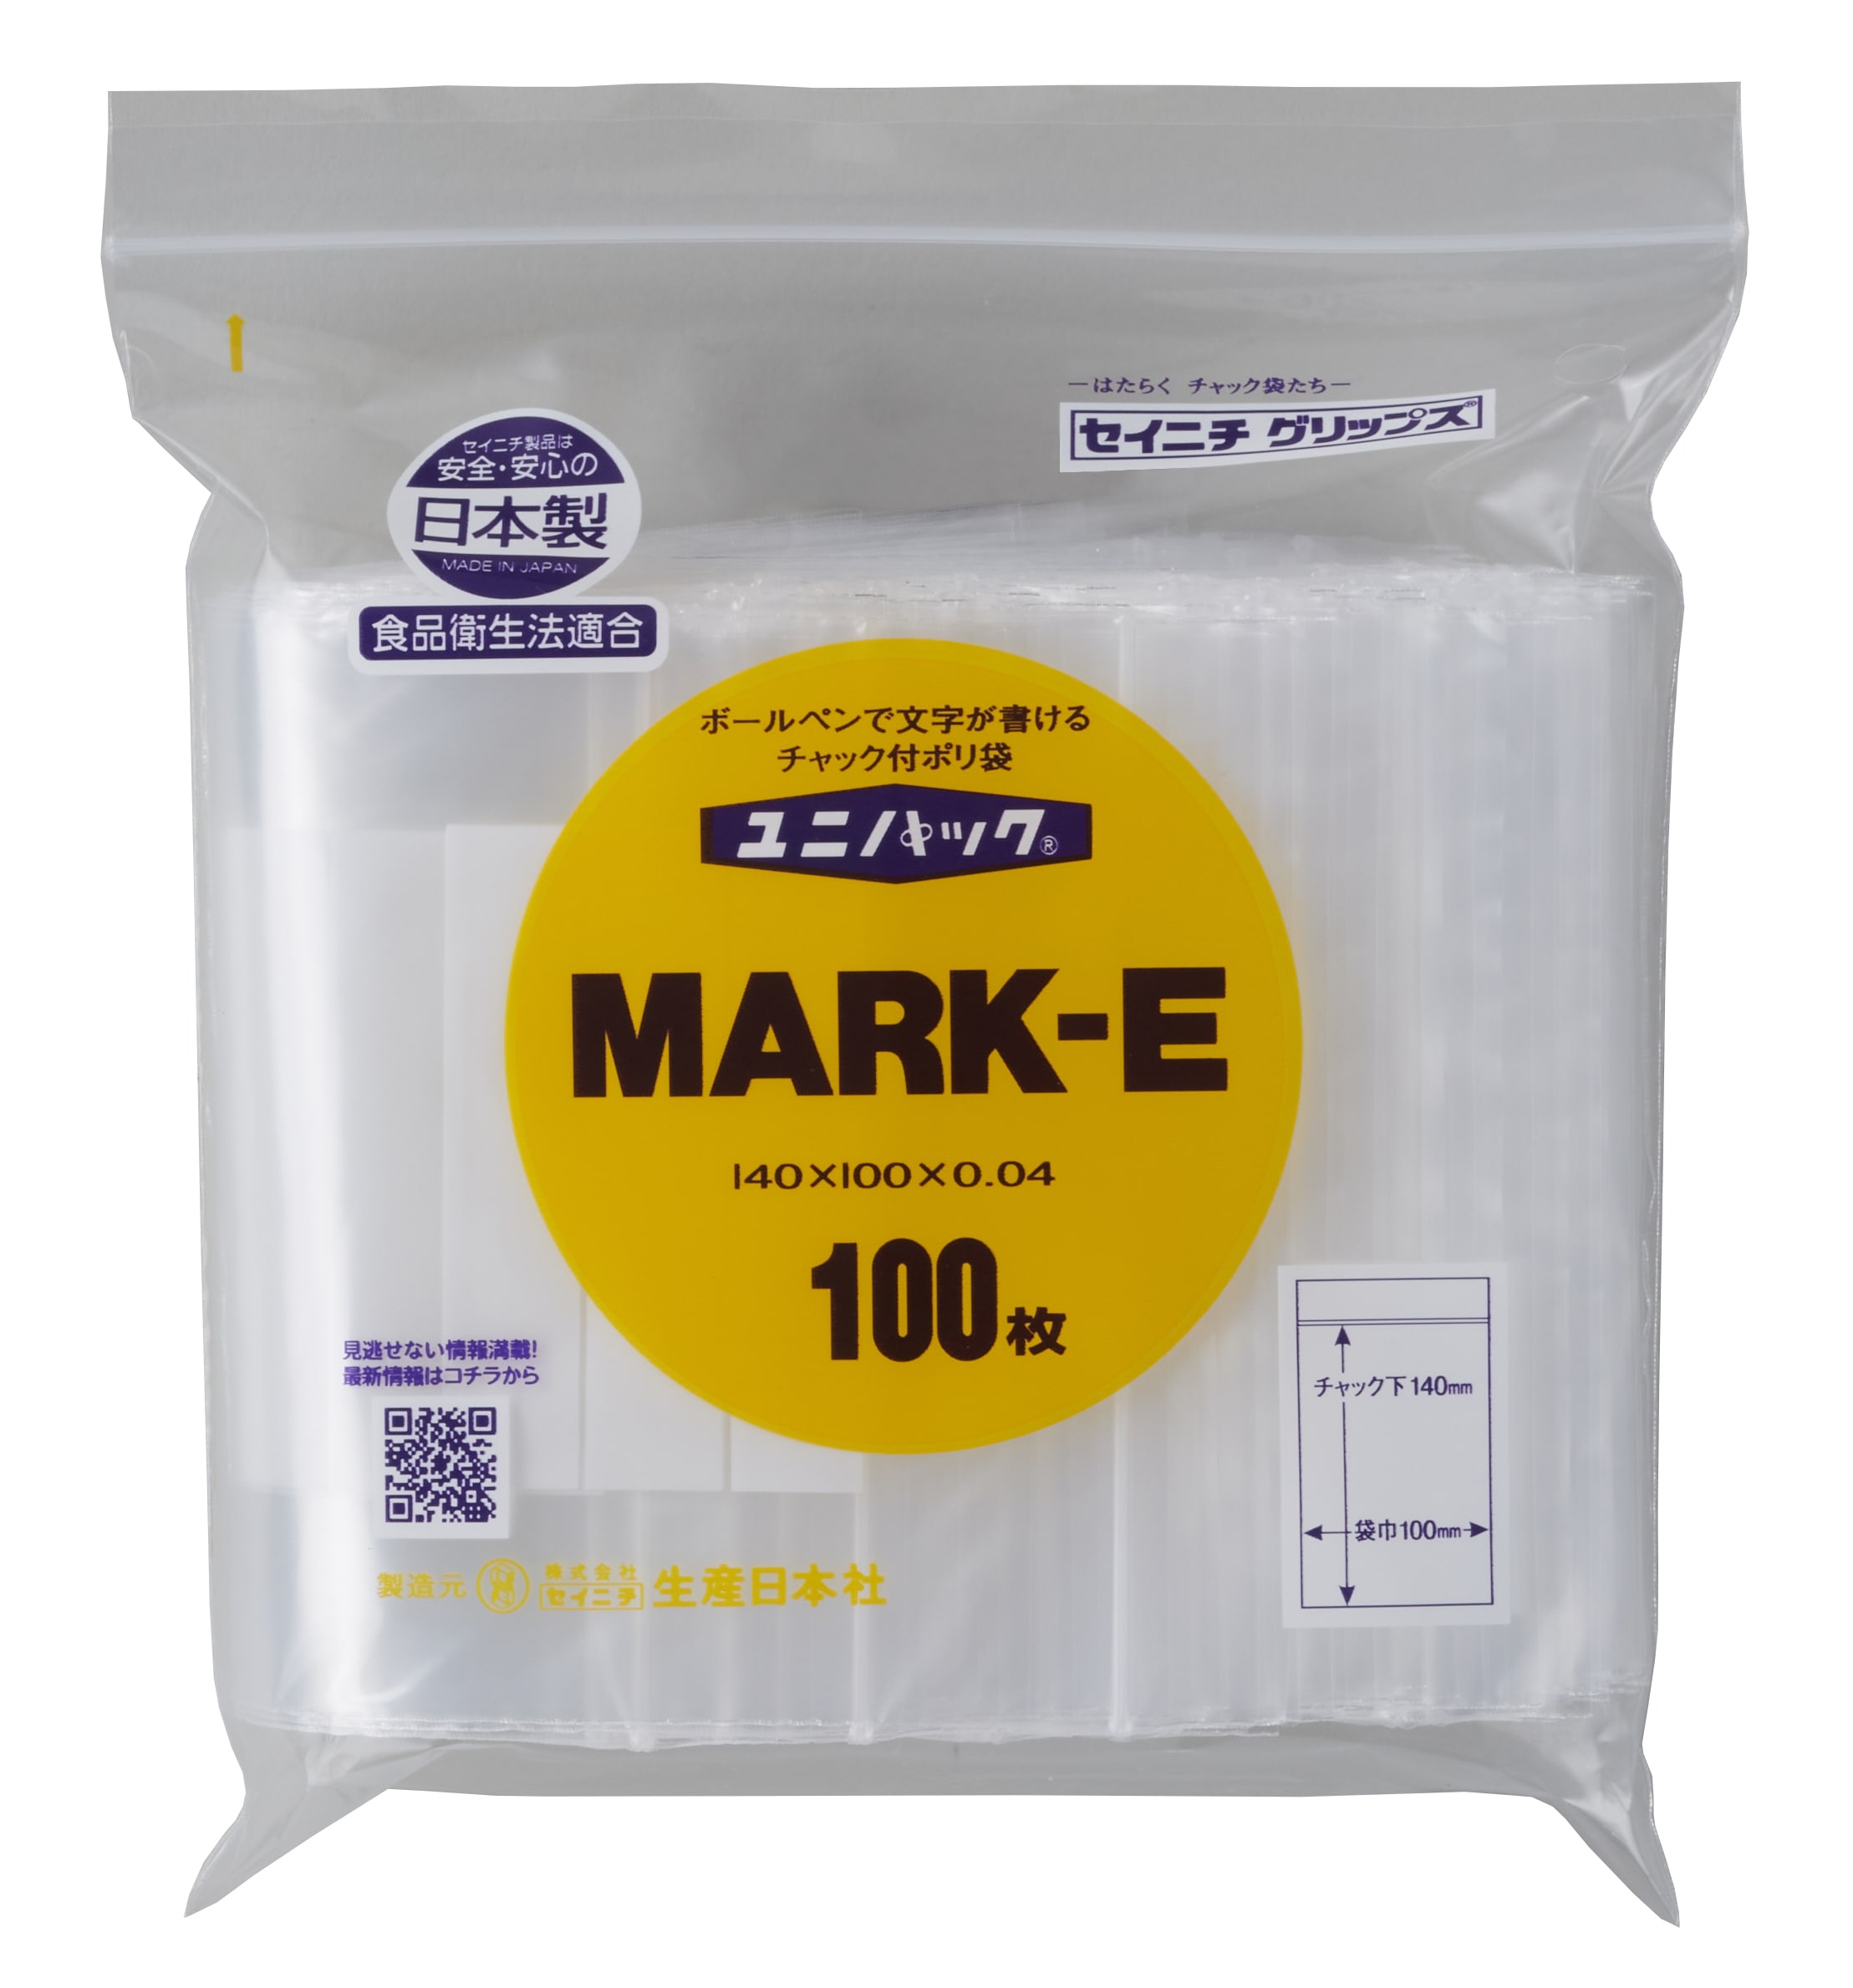 ユニパック MARK-E　チャック付ポリ袋 【100枚(1袋)】日本製白ベタ印刷部分にボールペン、サインペンなどで書き込みできます。